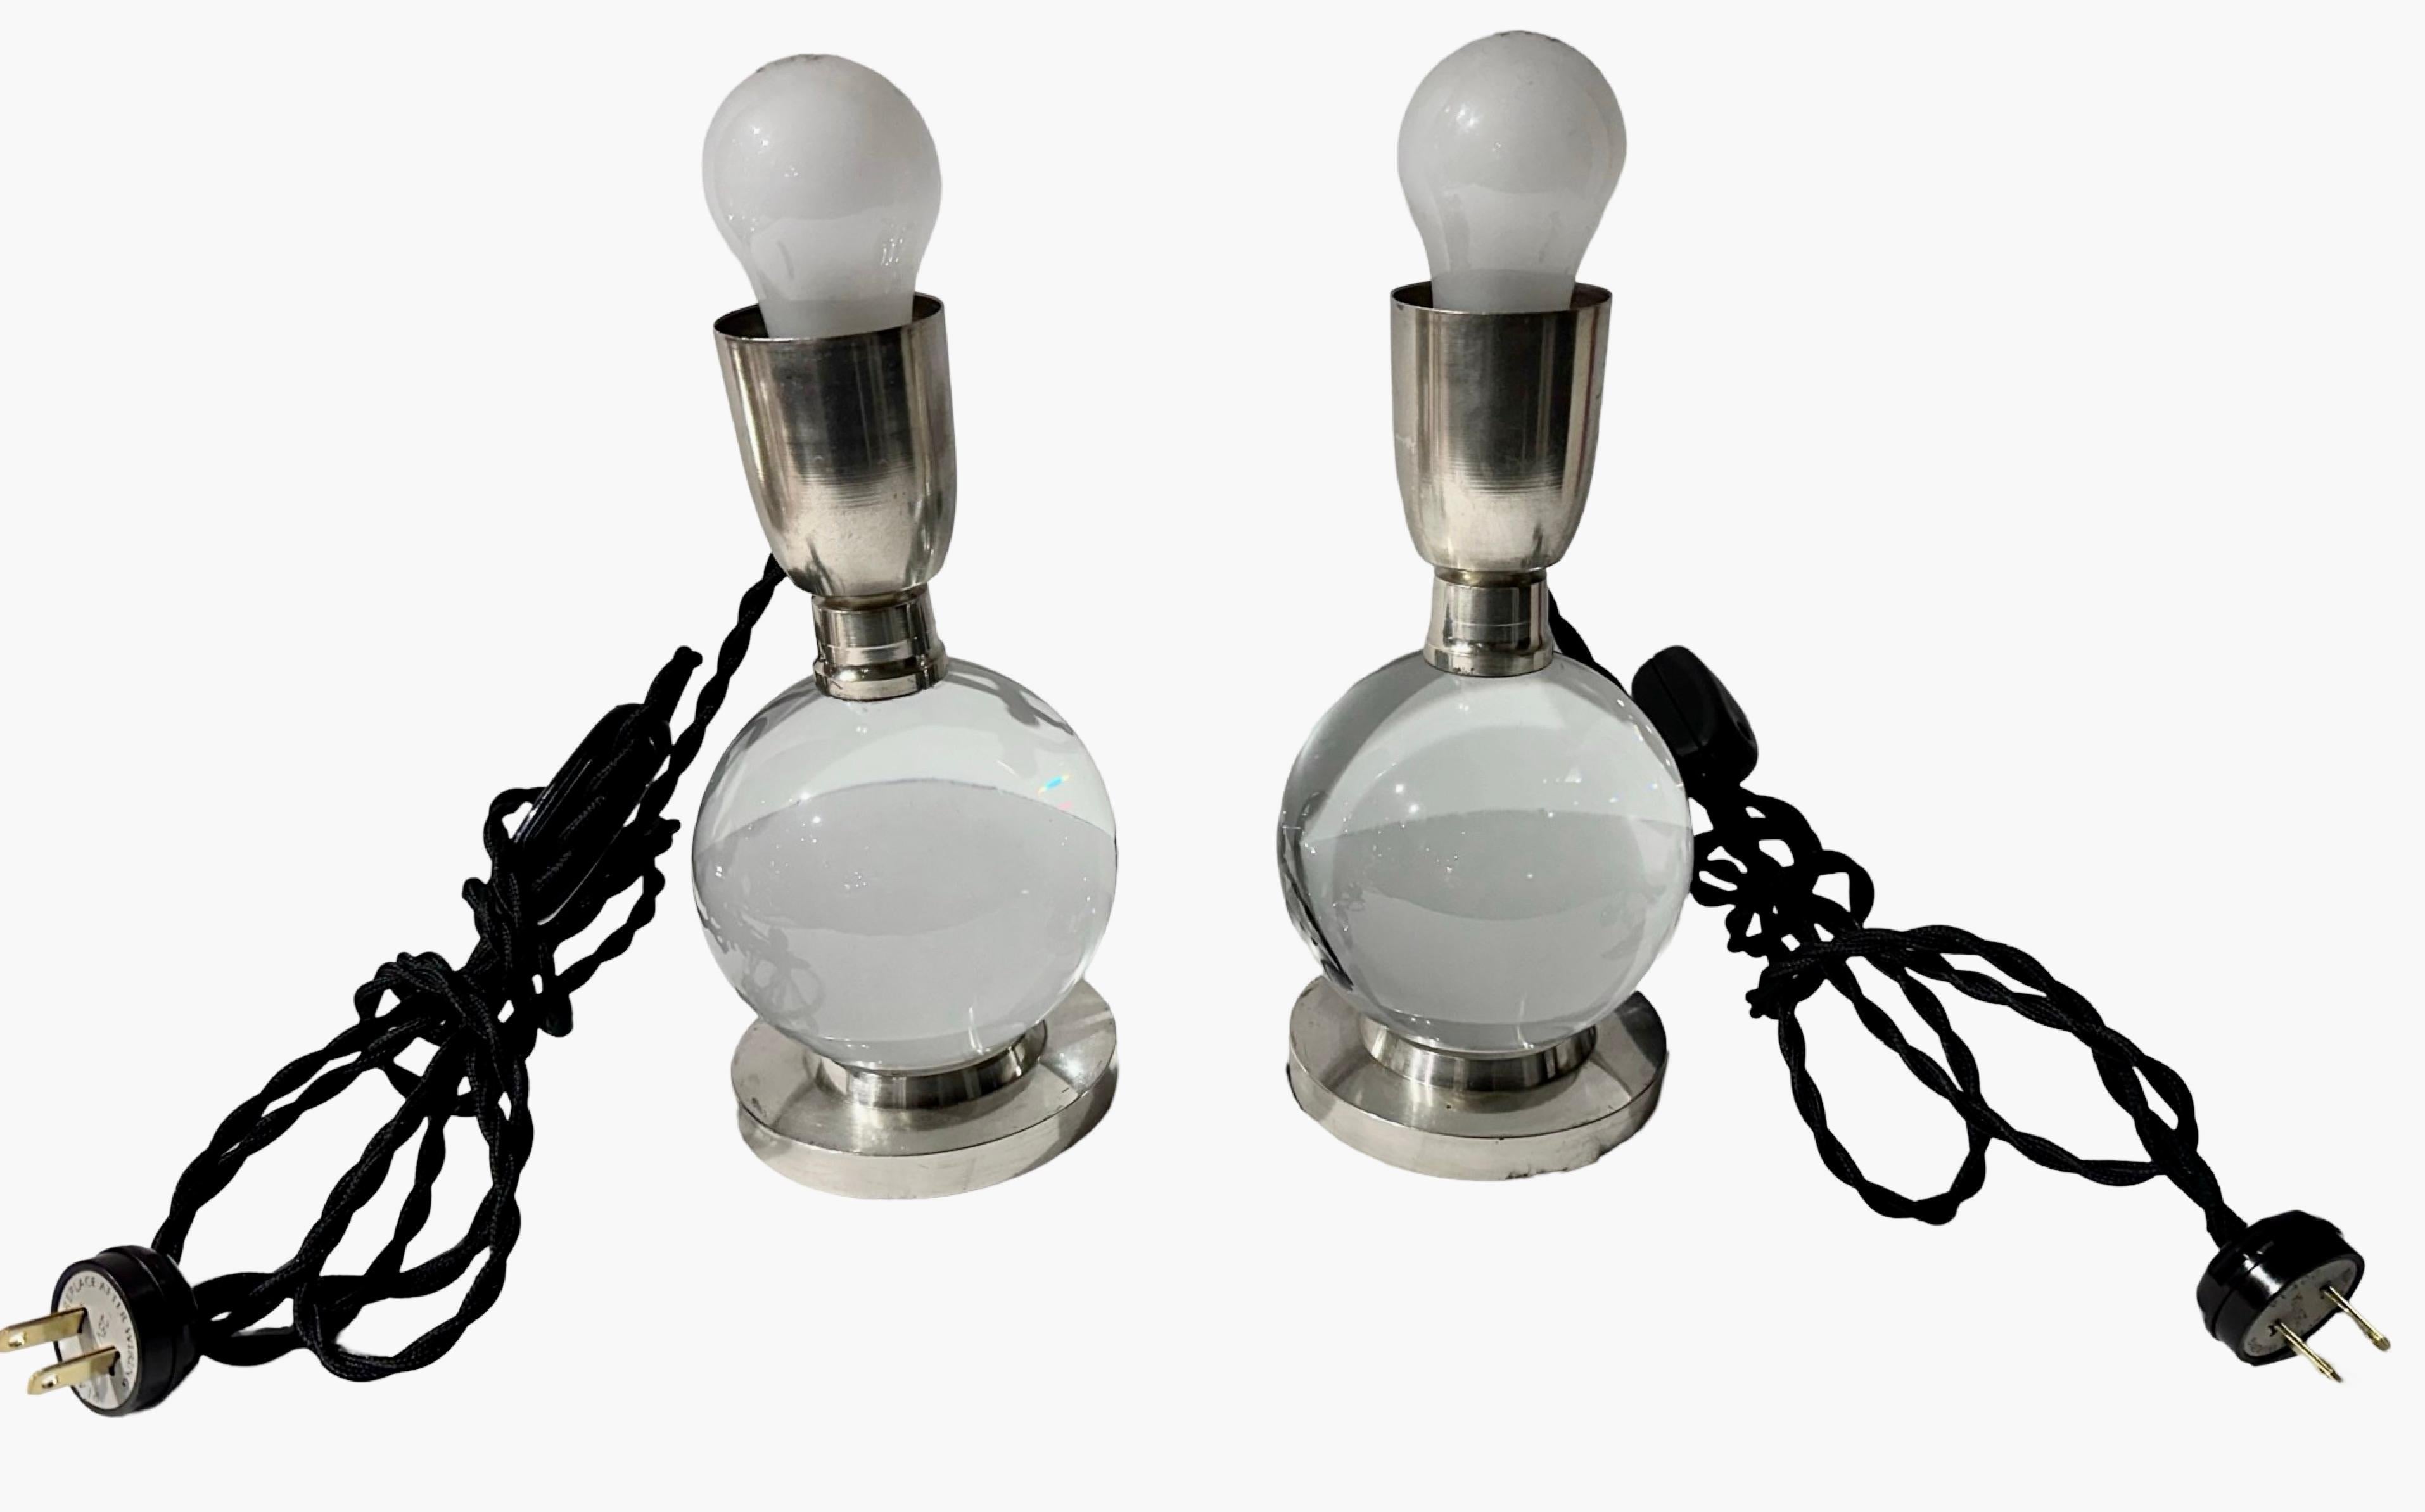 Ein modernistisches Lampenpaar von Jacques Adnet, entworfen für die Firma Baccarat, mit klarem Kristall und einem Nickelsockel. Die verstellbare Kugel ermöglicht verschiedene Positionen. Diese Lampen stammen aus den 1930er Jahren und sind im